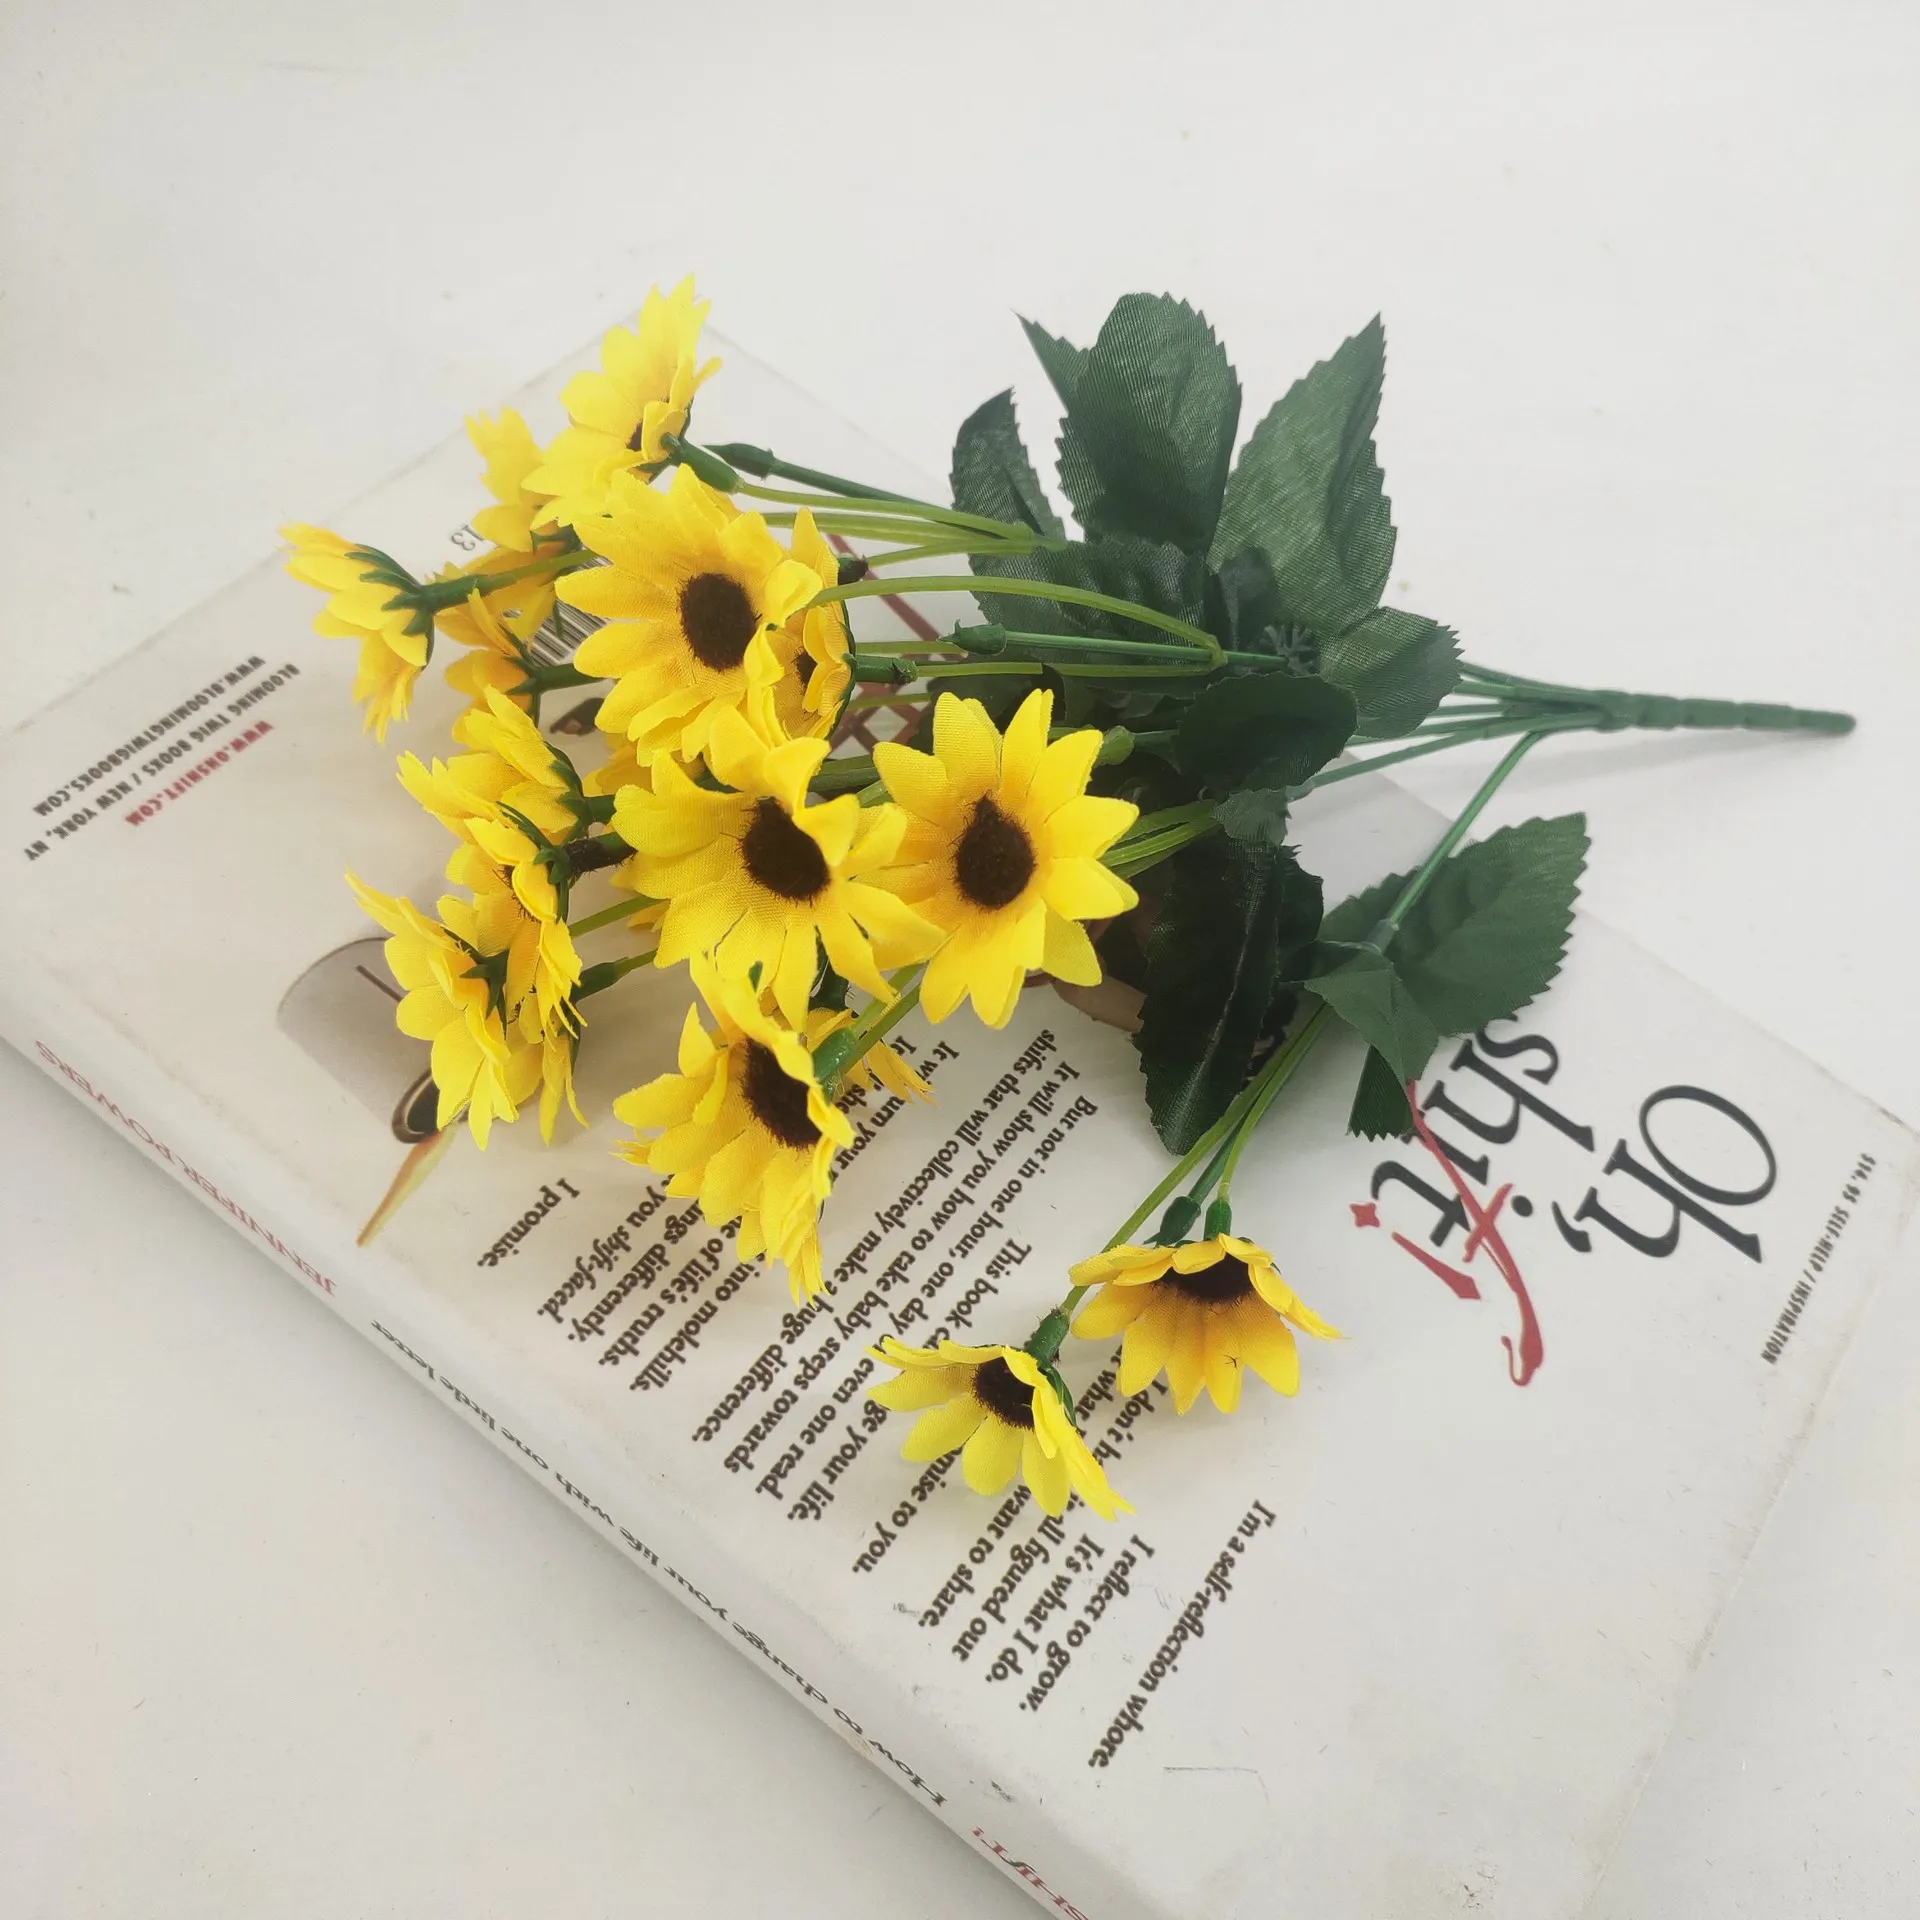 Grosir Murah 22 Kepala Buatan Bunga Matahari Kecil Karangan Bunga Sutra Bunga Buatan Bunga Kecantikan Bunga Dekorasi Buy Bunga Plastik Dekorasi Buatan Bunga Simulasi 7 Garpu Bunga Matahari Rumah Ruang Tamu